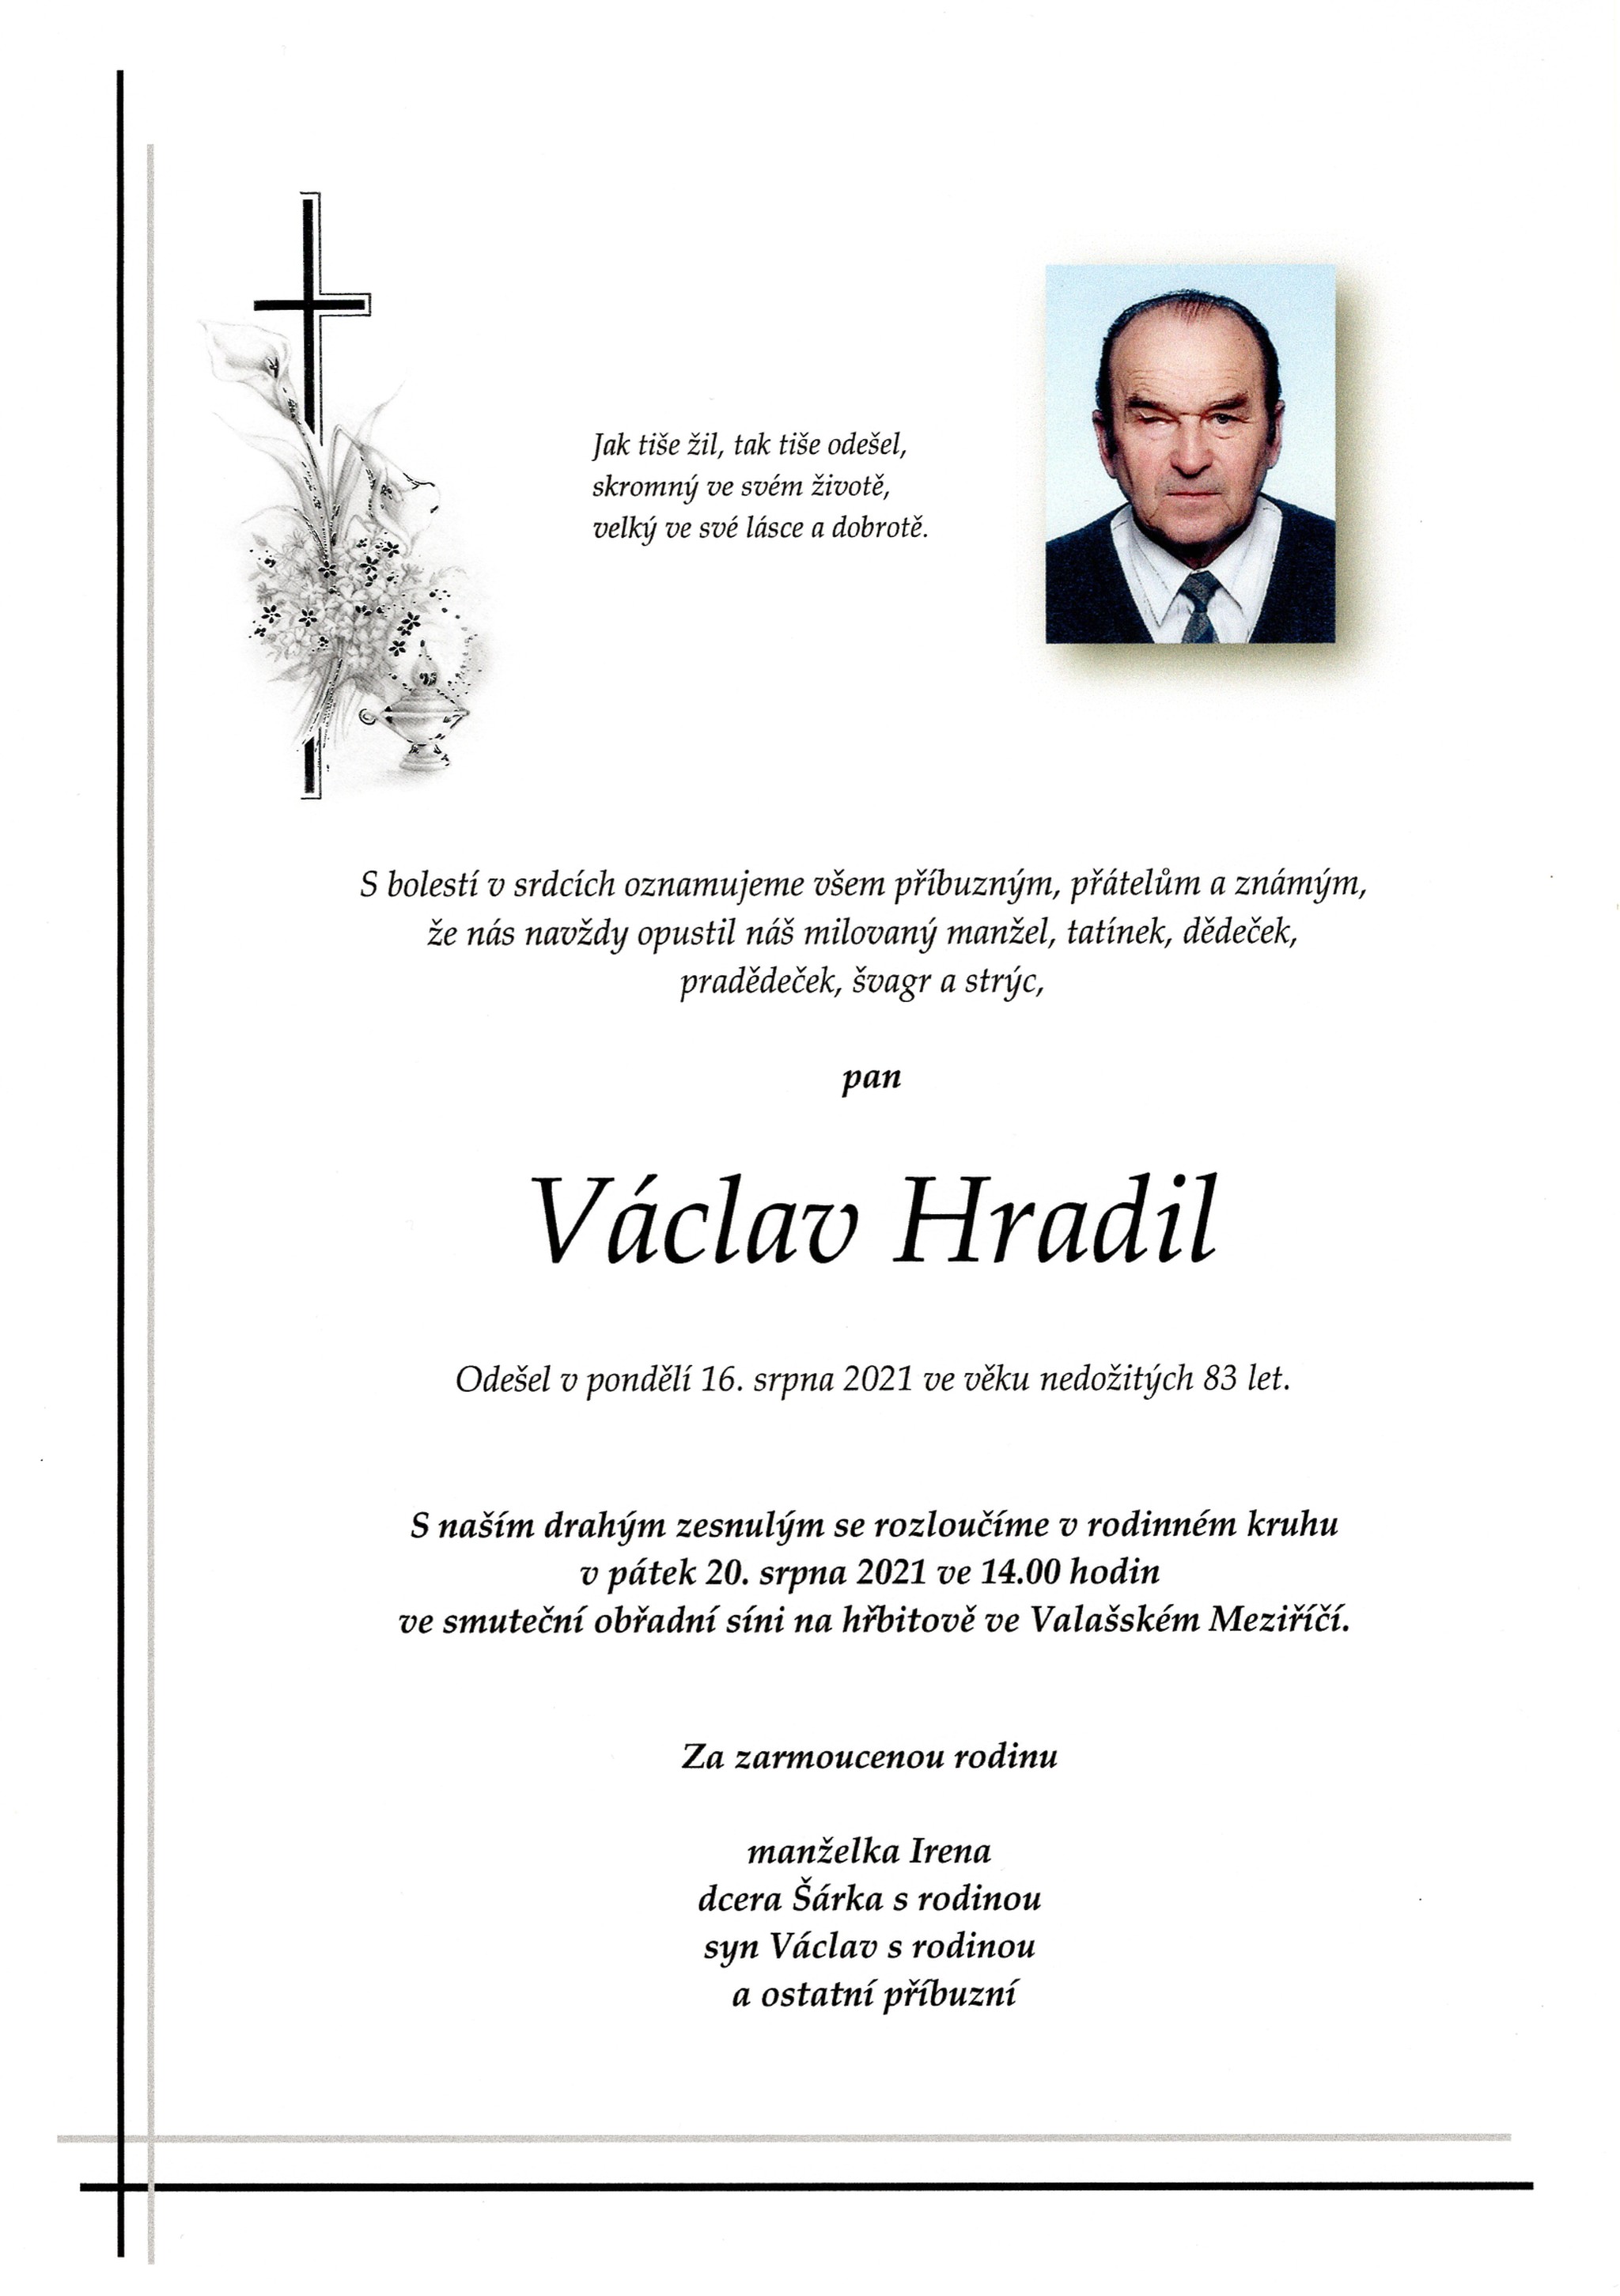 Václav Hradil